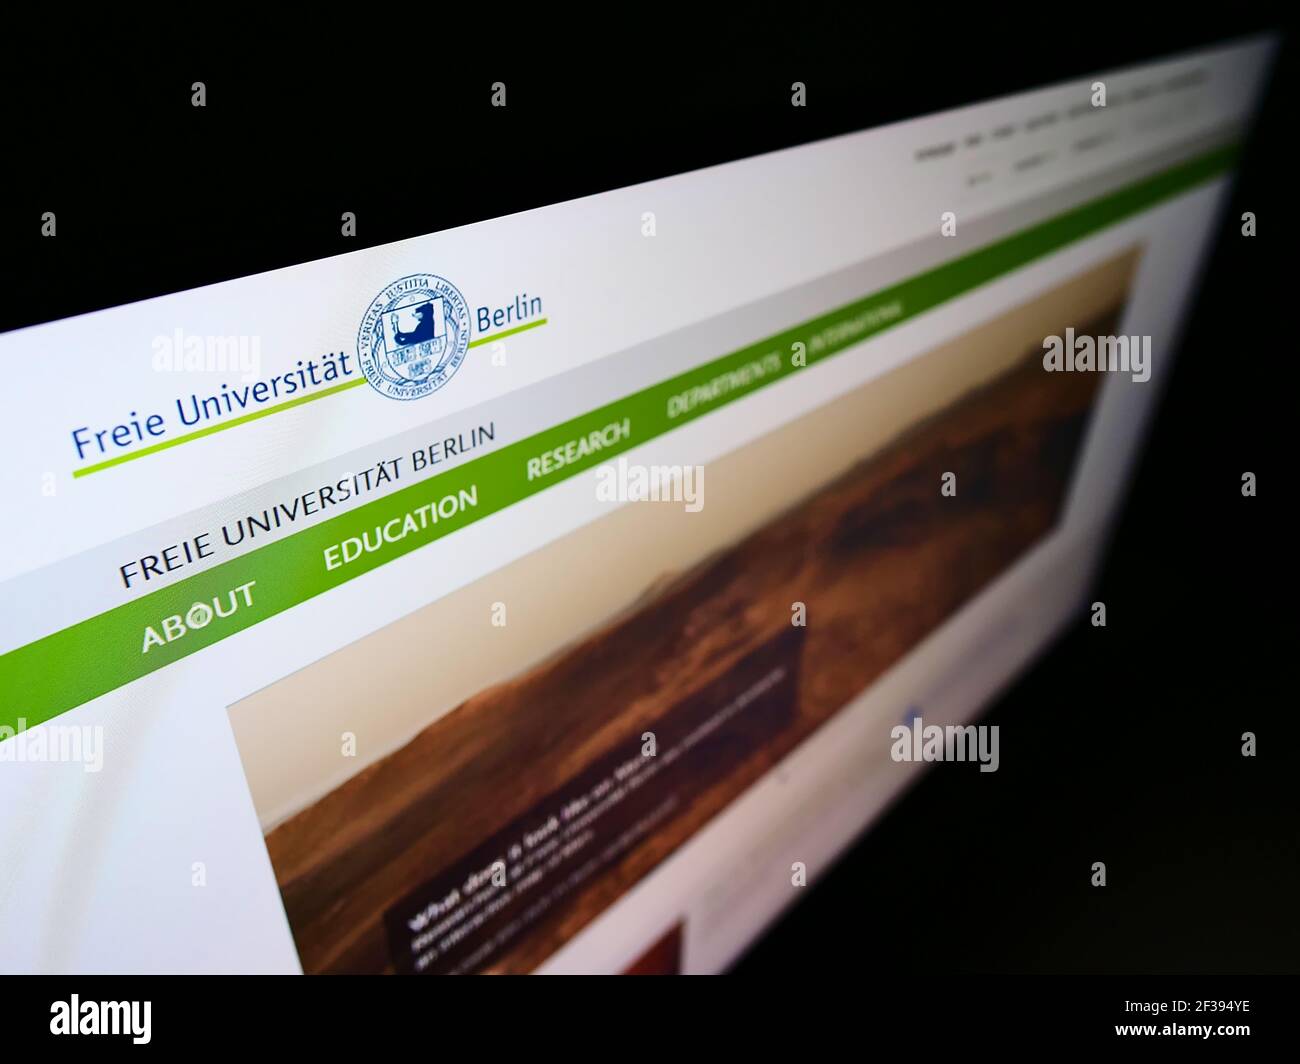 Vista de gran angular de la página web con el logotipo de la institución educativa alemana Freie Universität Berlin (FU) en el monitor. Enfoque en la parte superior izquierda de la pantalla. Foto de stock